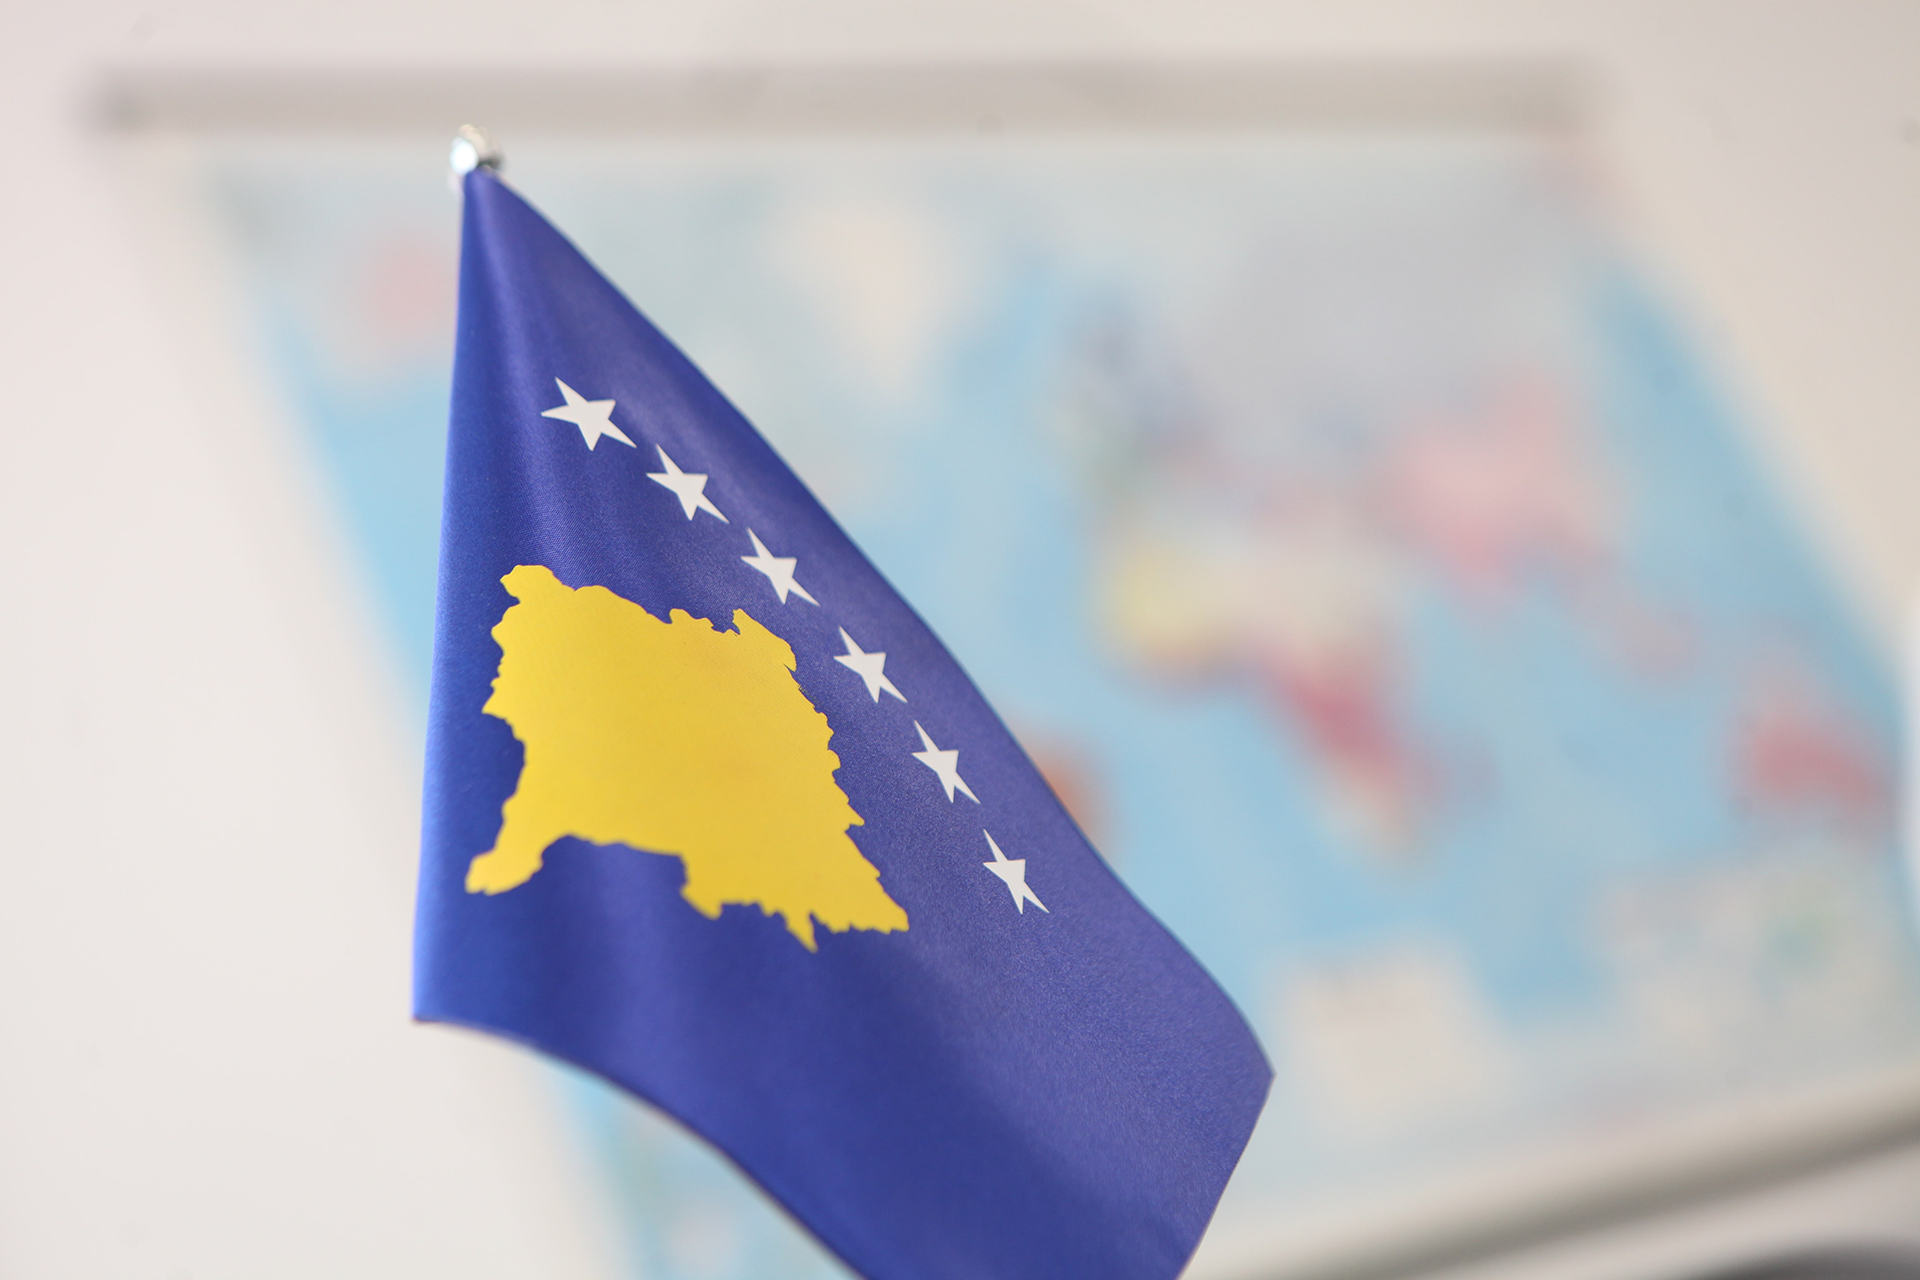 Për paqe  të qëndrueshme afatgjatë dhe stabilitet në rajon, koha vonon por politika duhet të vepron me strategji bashkimi  për të gjithë shqiptarët në një shtet